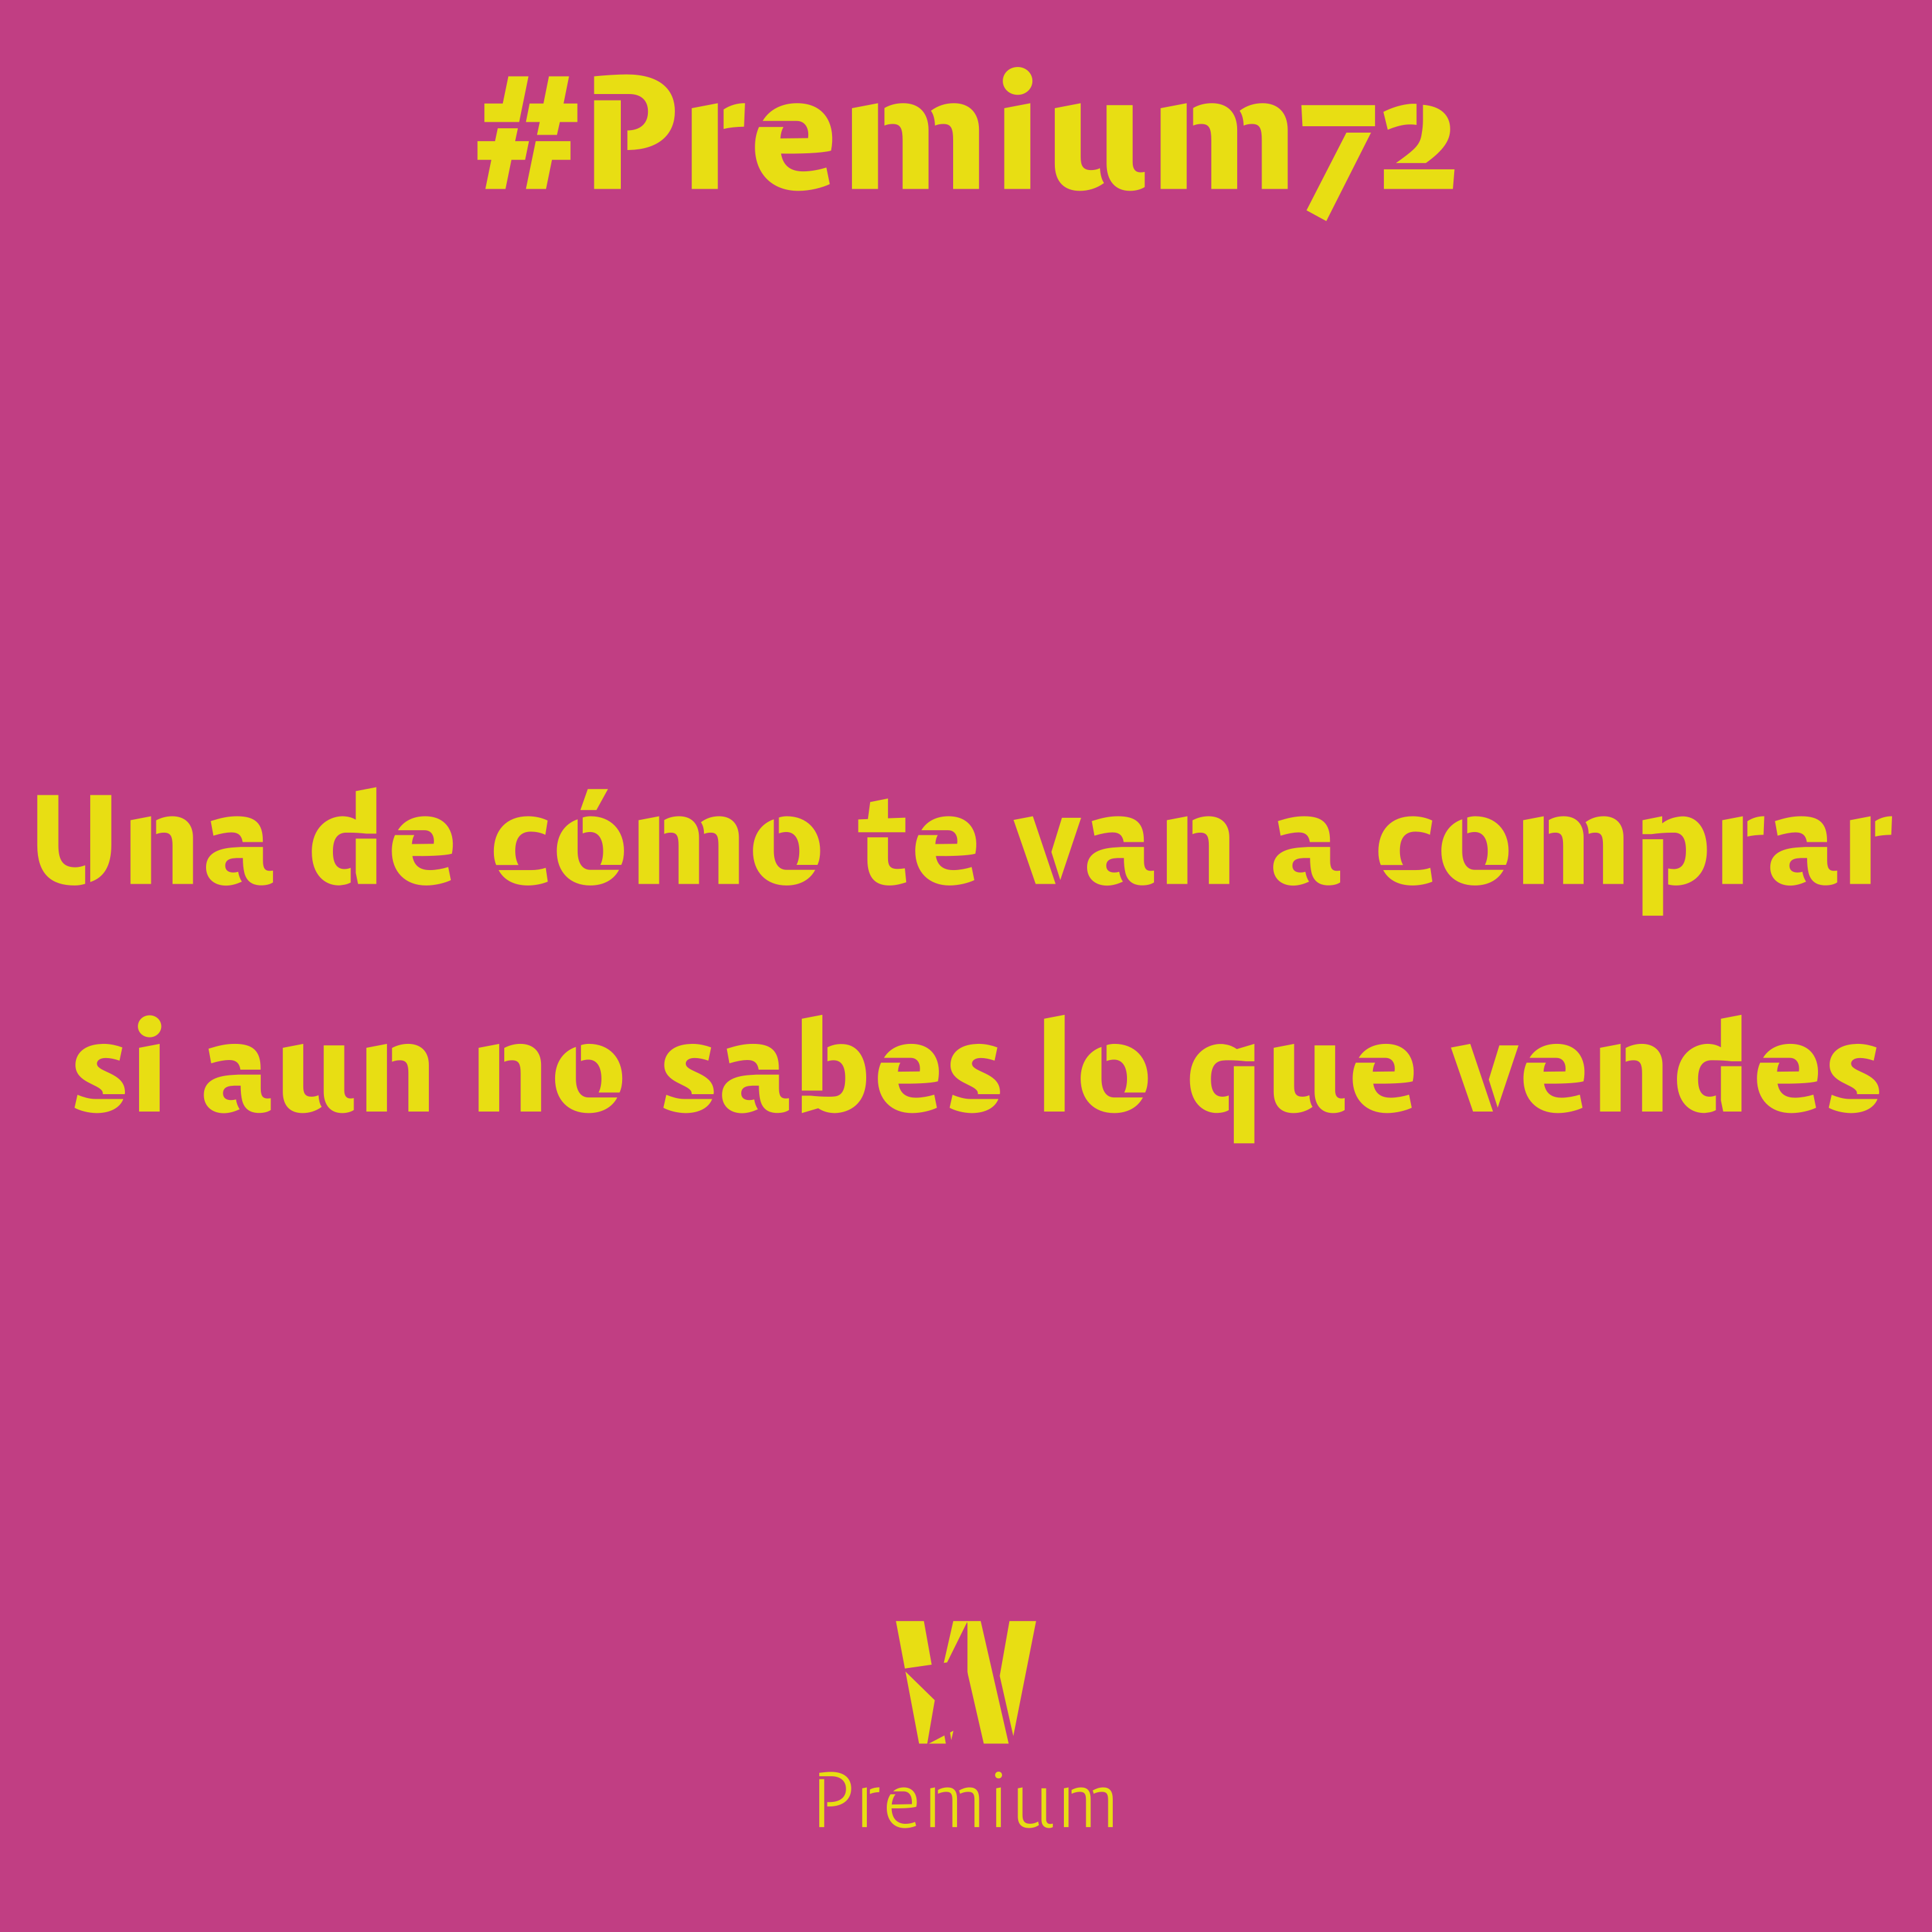 #Premium72 - Una de cómo te van a comprar si aun no sabes lo que vendes